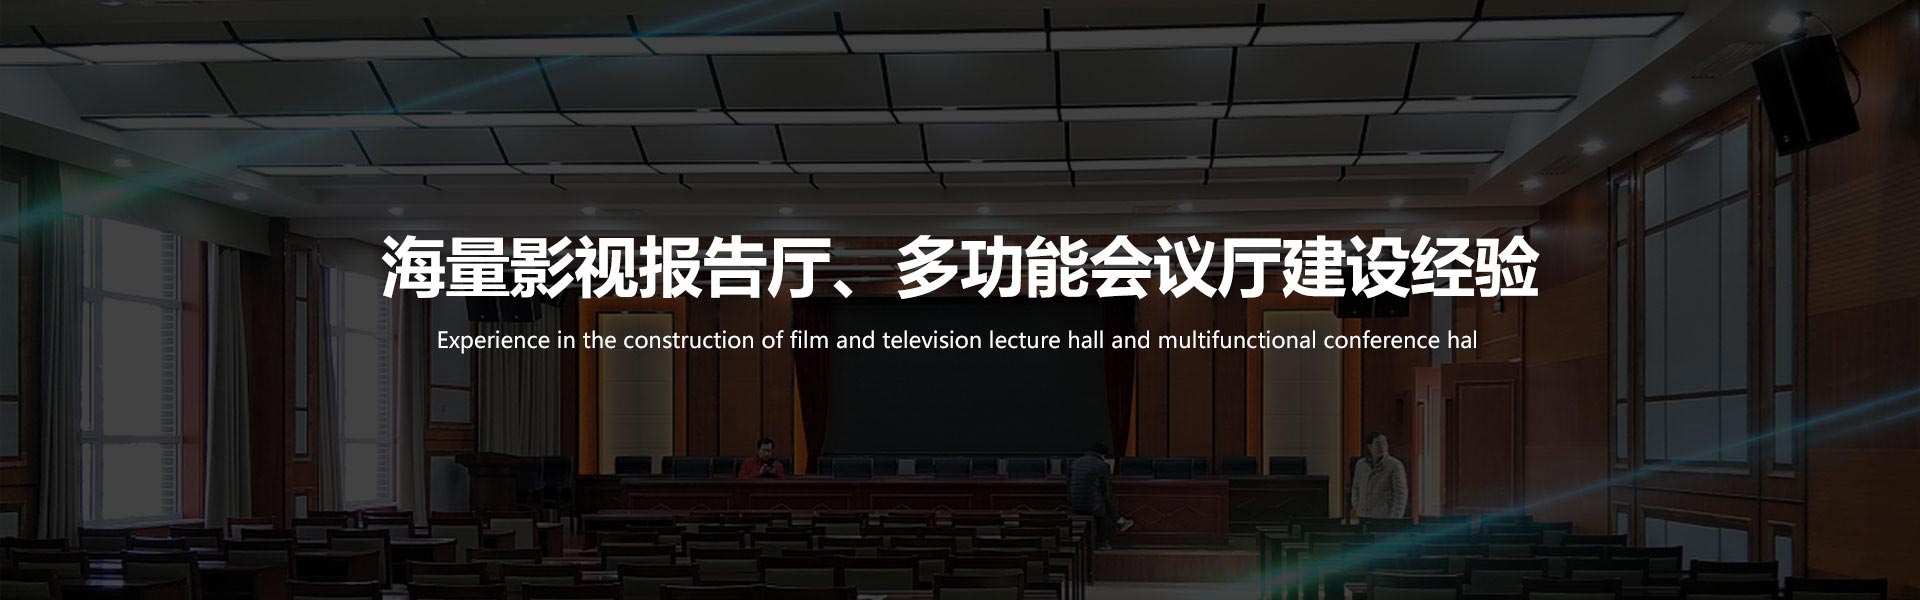 广州富邦拥有丰富的多功能会议厅、影视报告厅建设经验